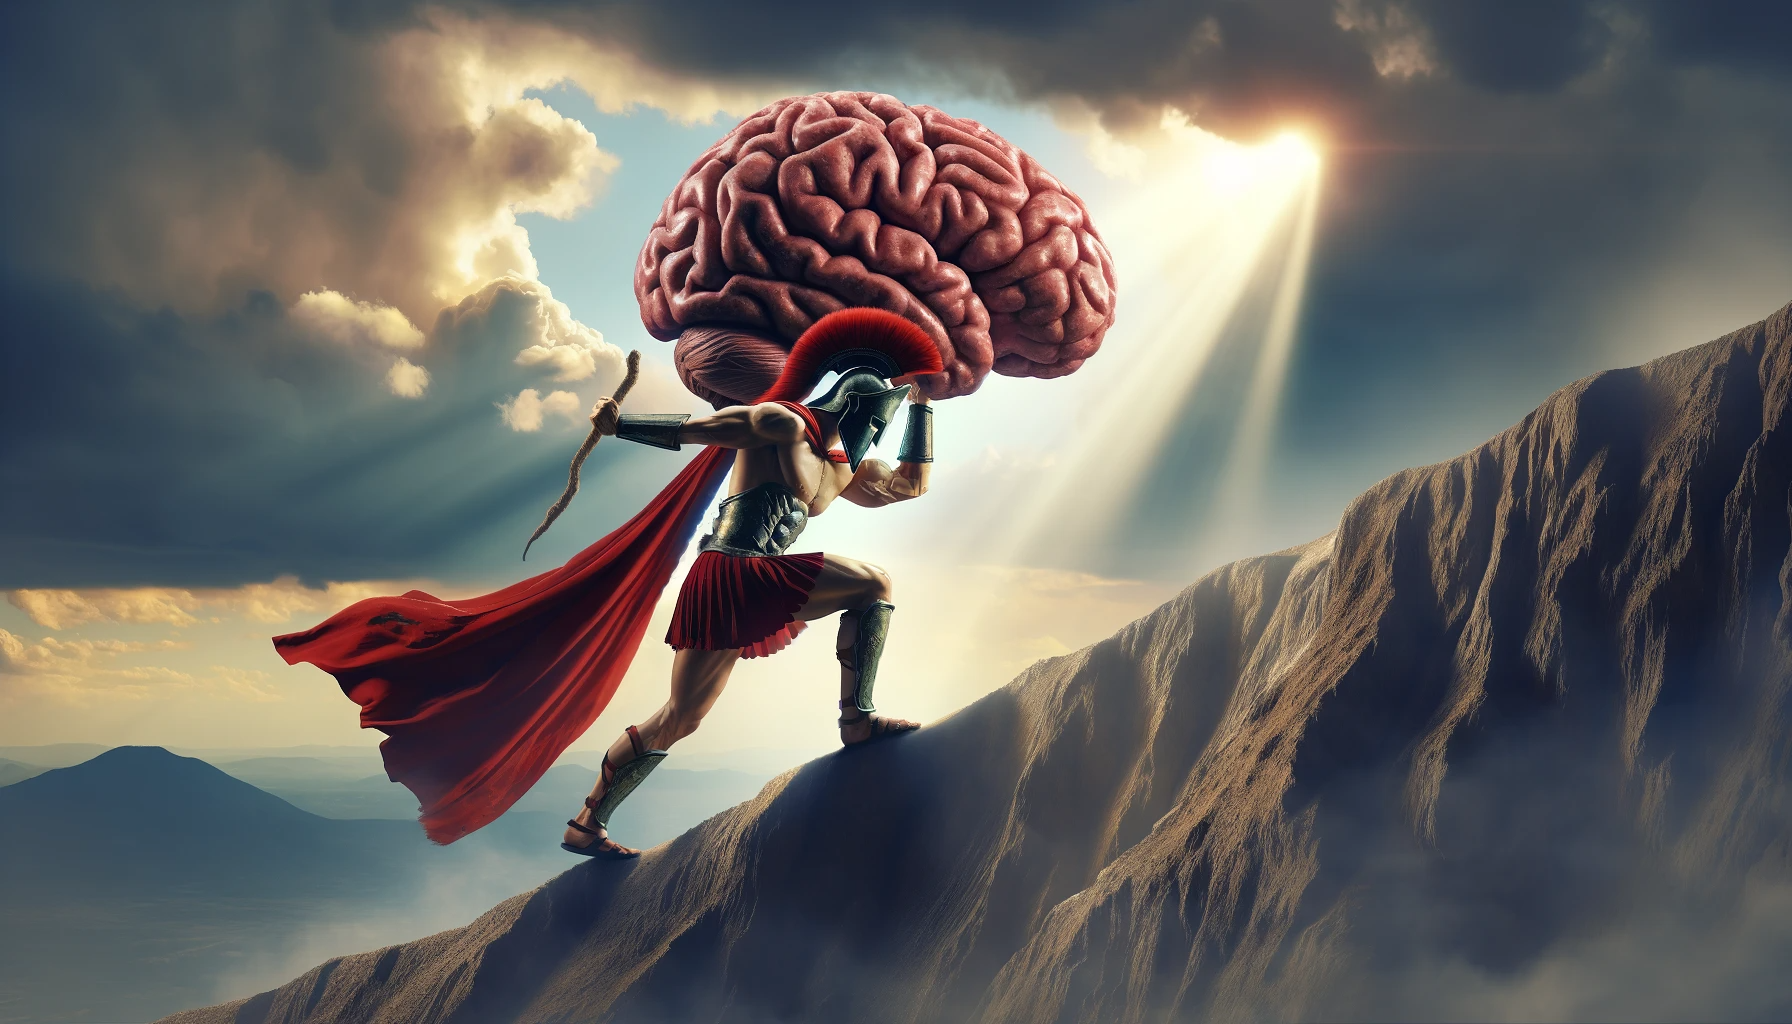 Cervello da Spartano: Come aumentare Tenacia e Forza di Volontà!